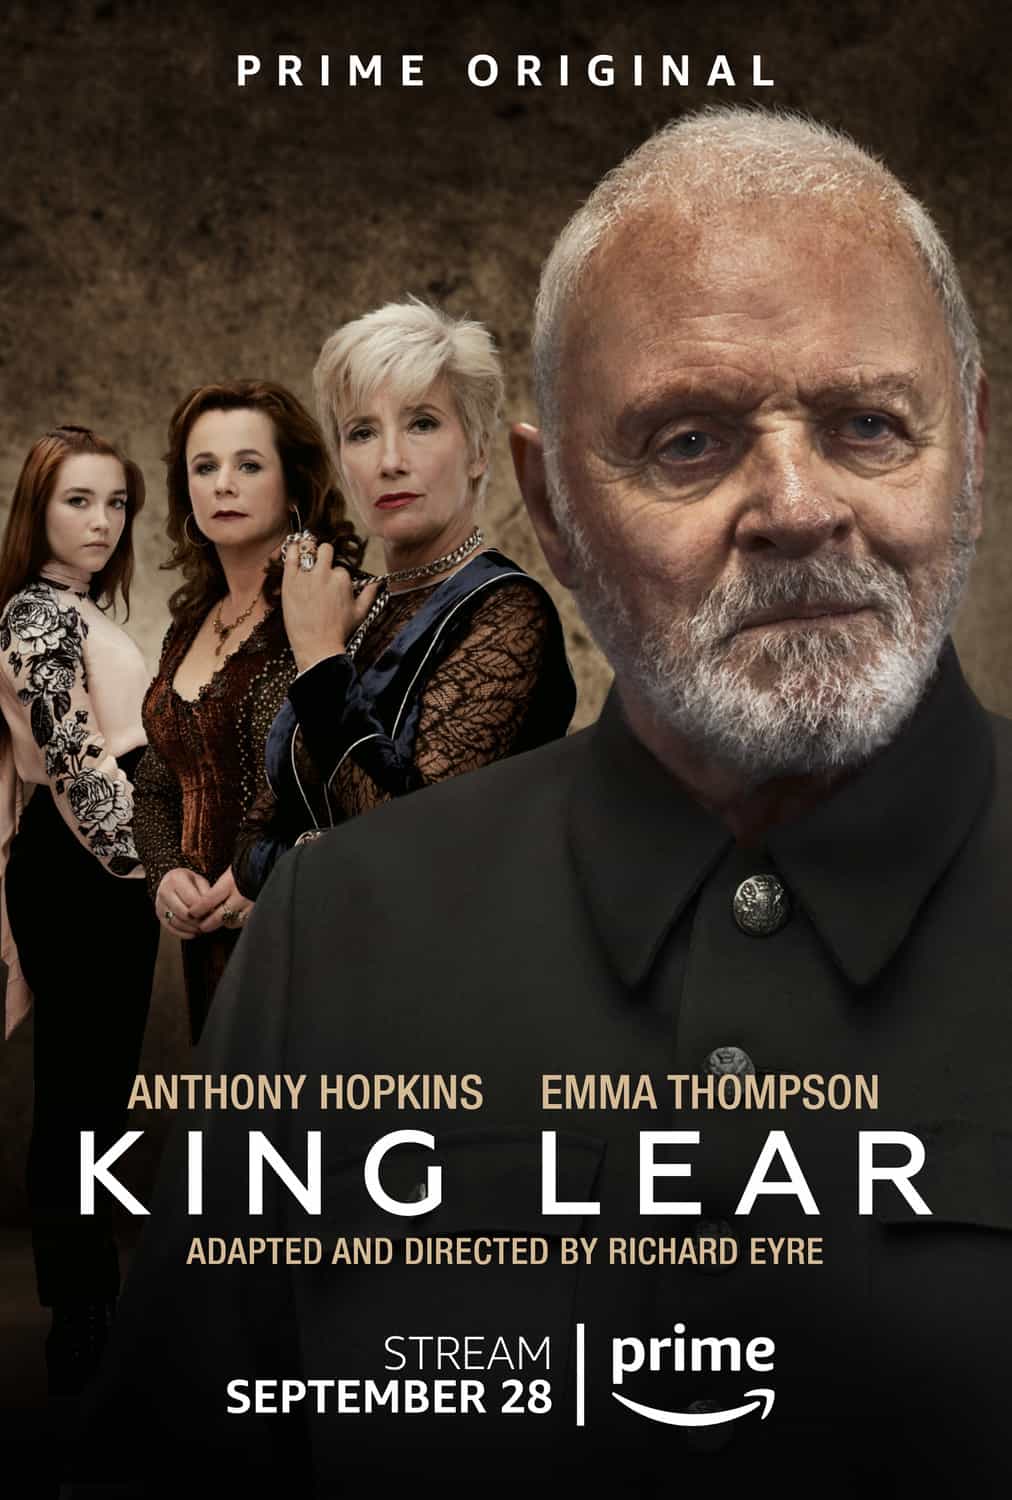 مشاهدة فيلم King Lear 2018 مترجم